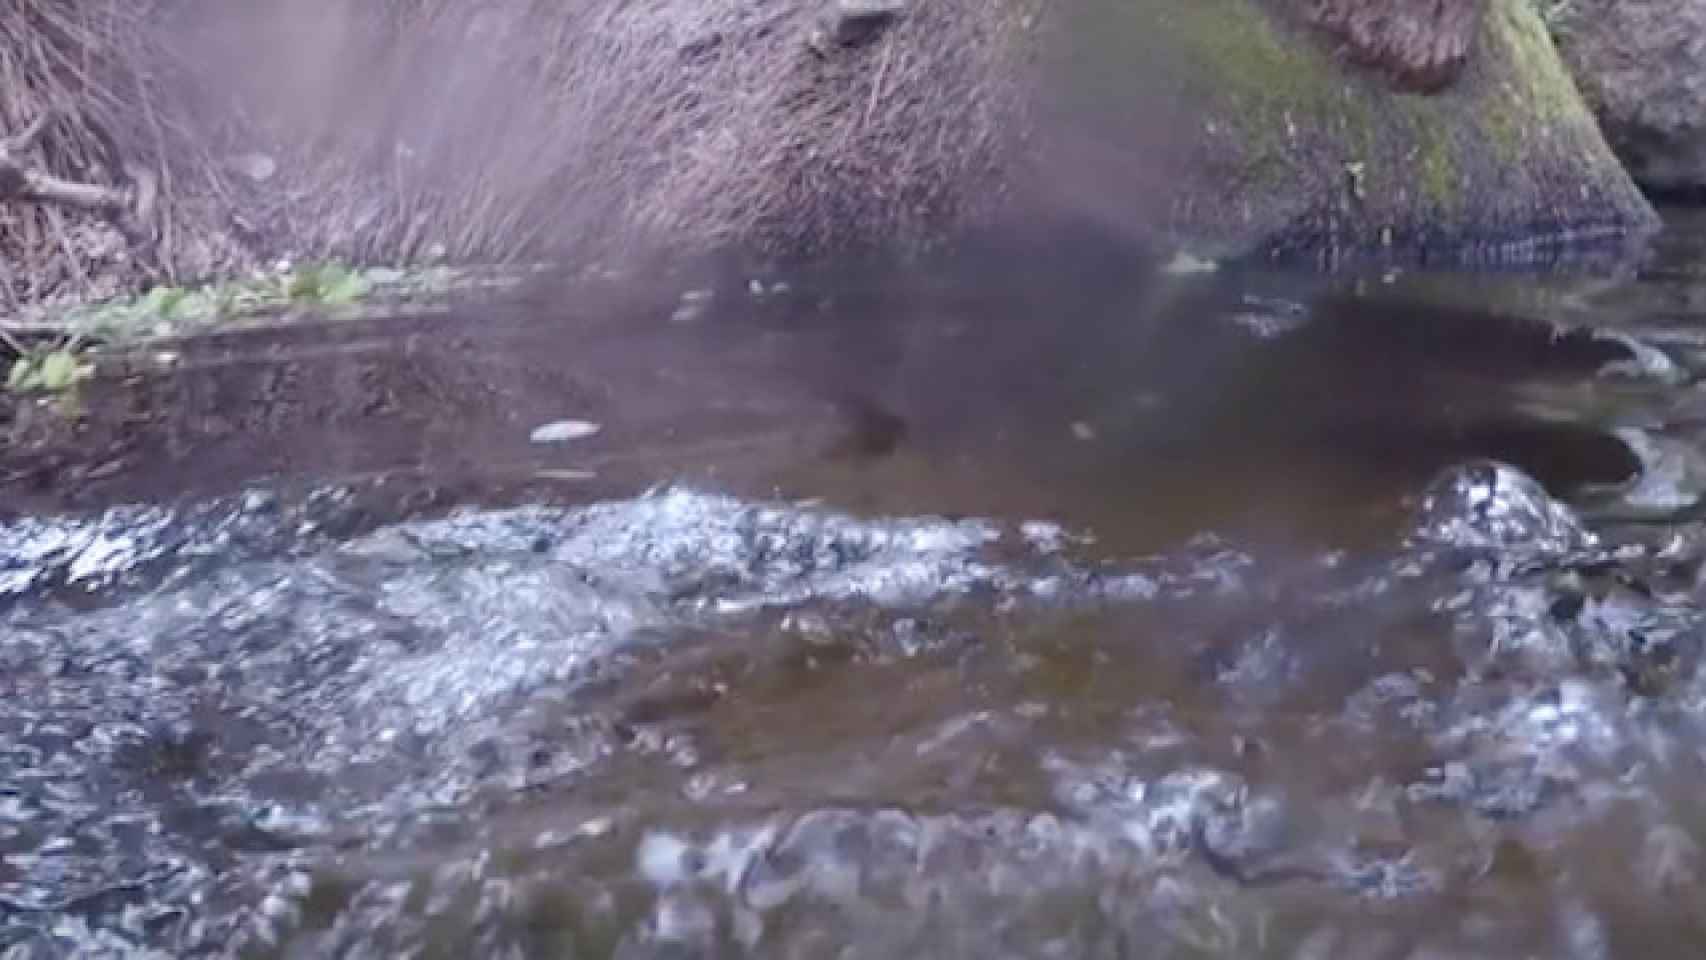 El joven saltó al río sin percatarse de la presencia del cocodrilo / Facebook